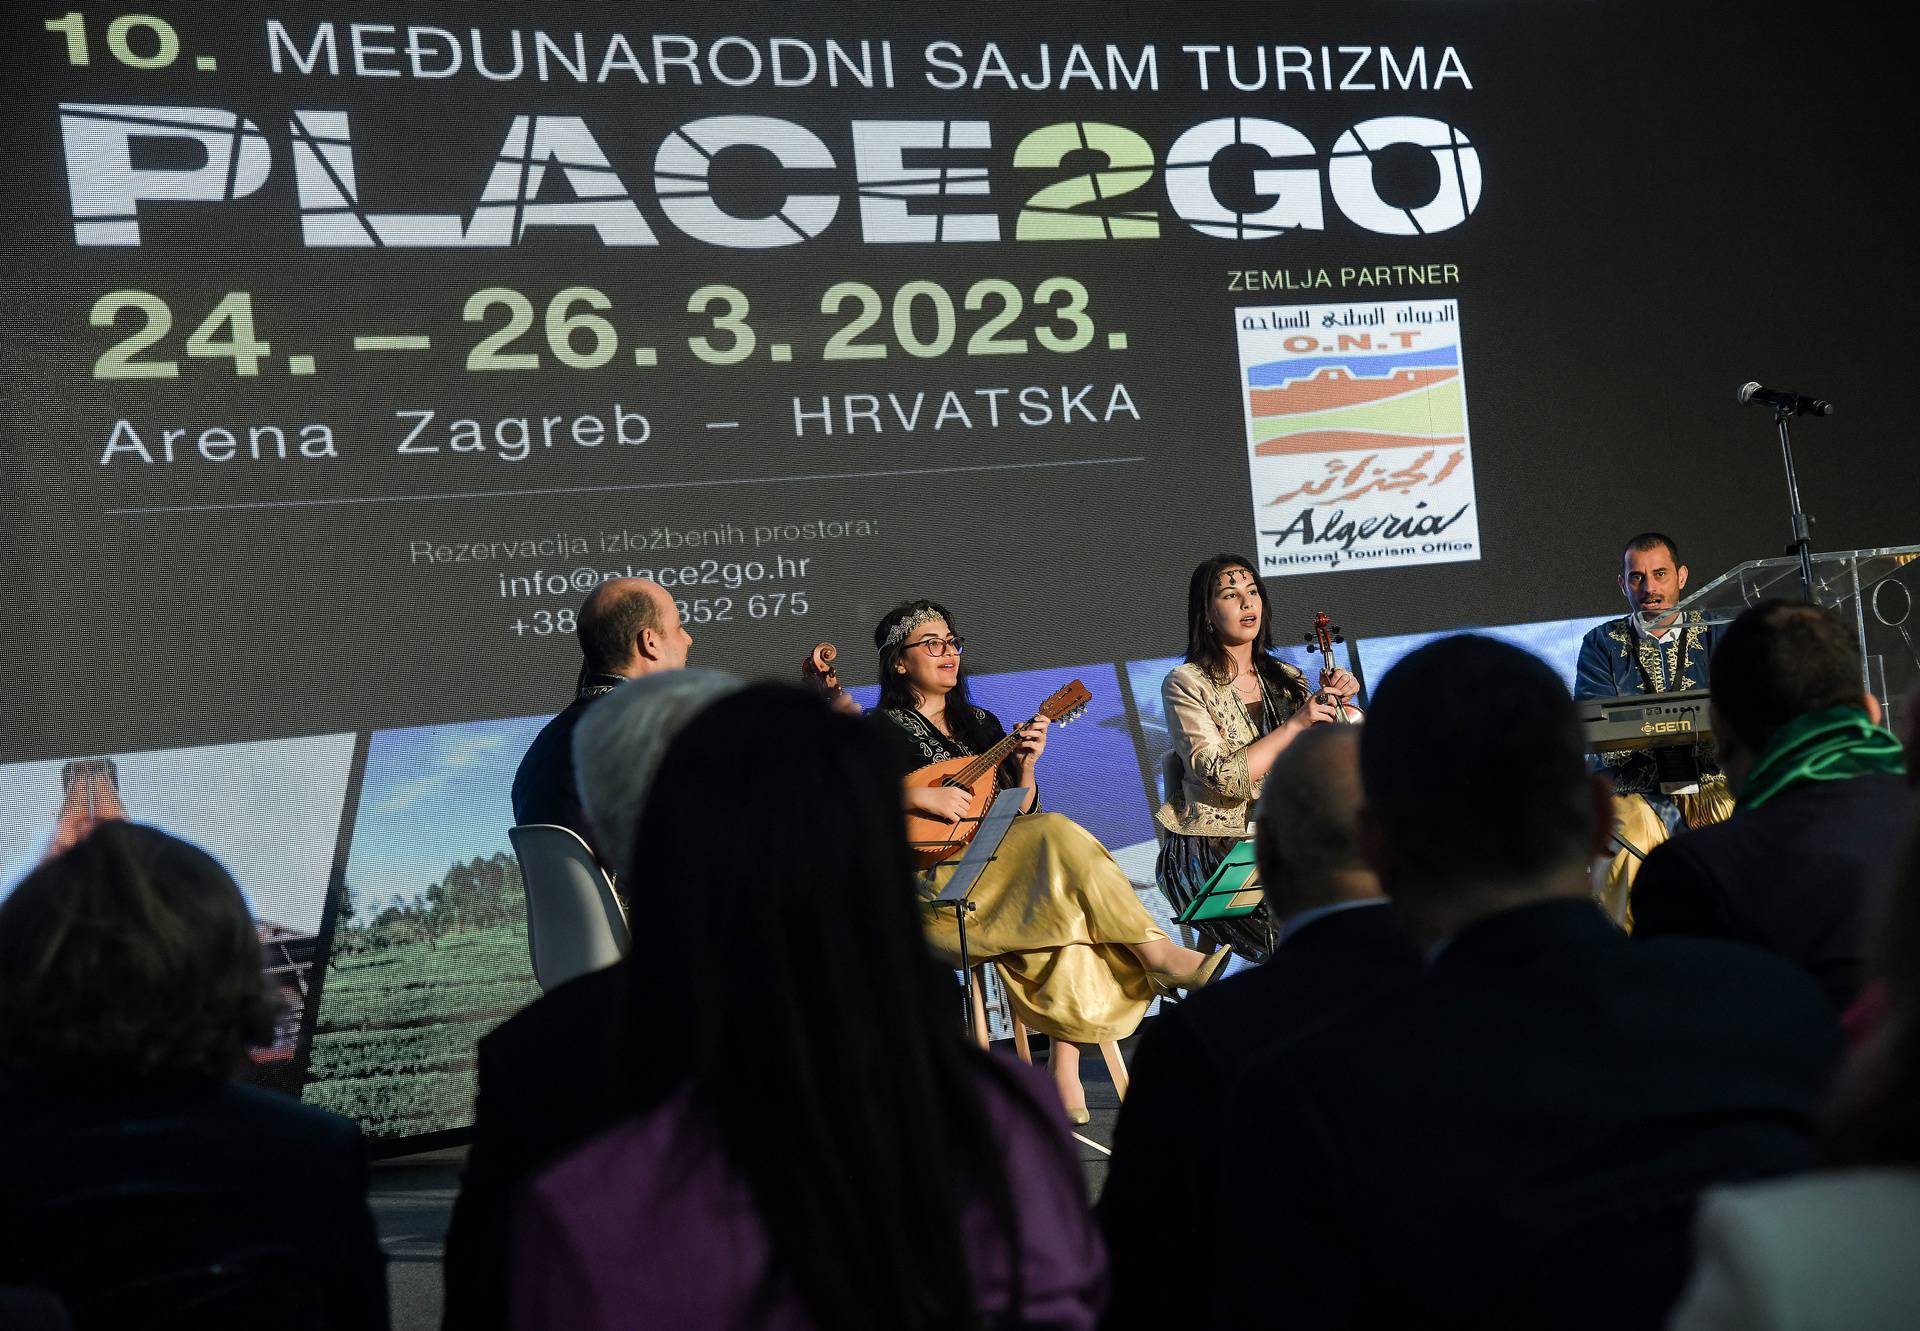 Zagreb: Otvorenje 10. međunarodnog sajma turizma Place2go